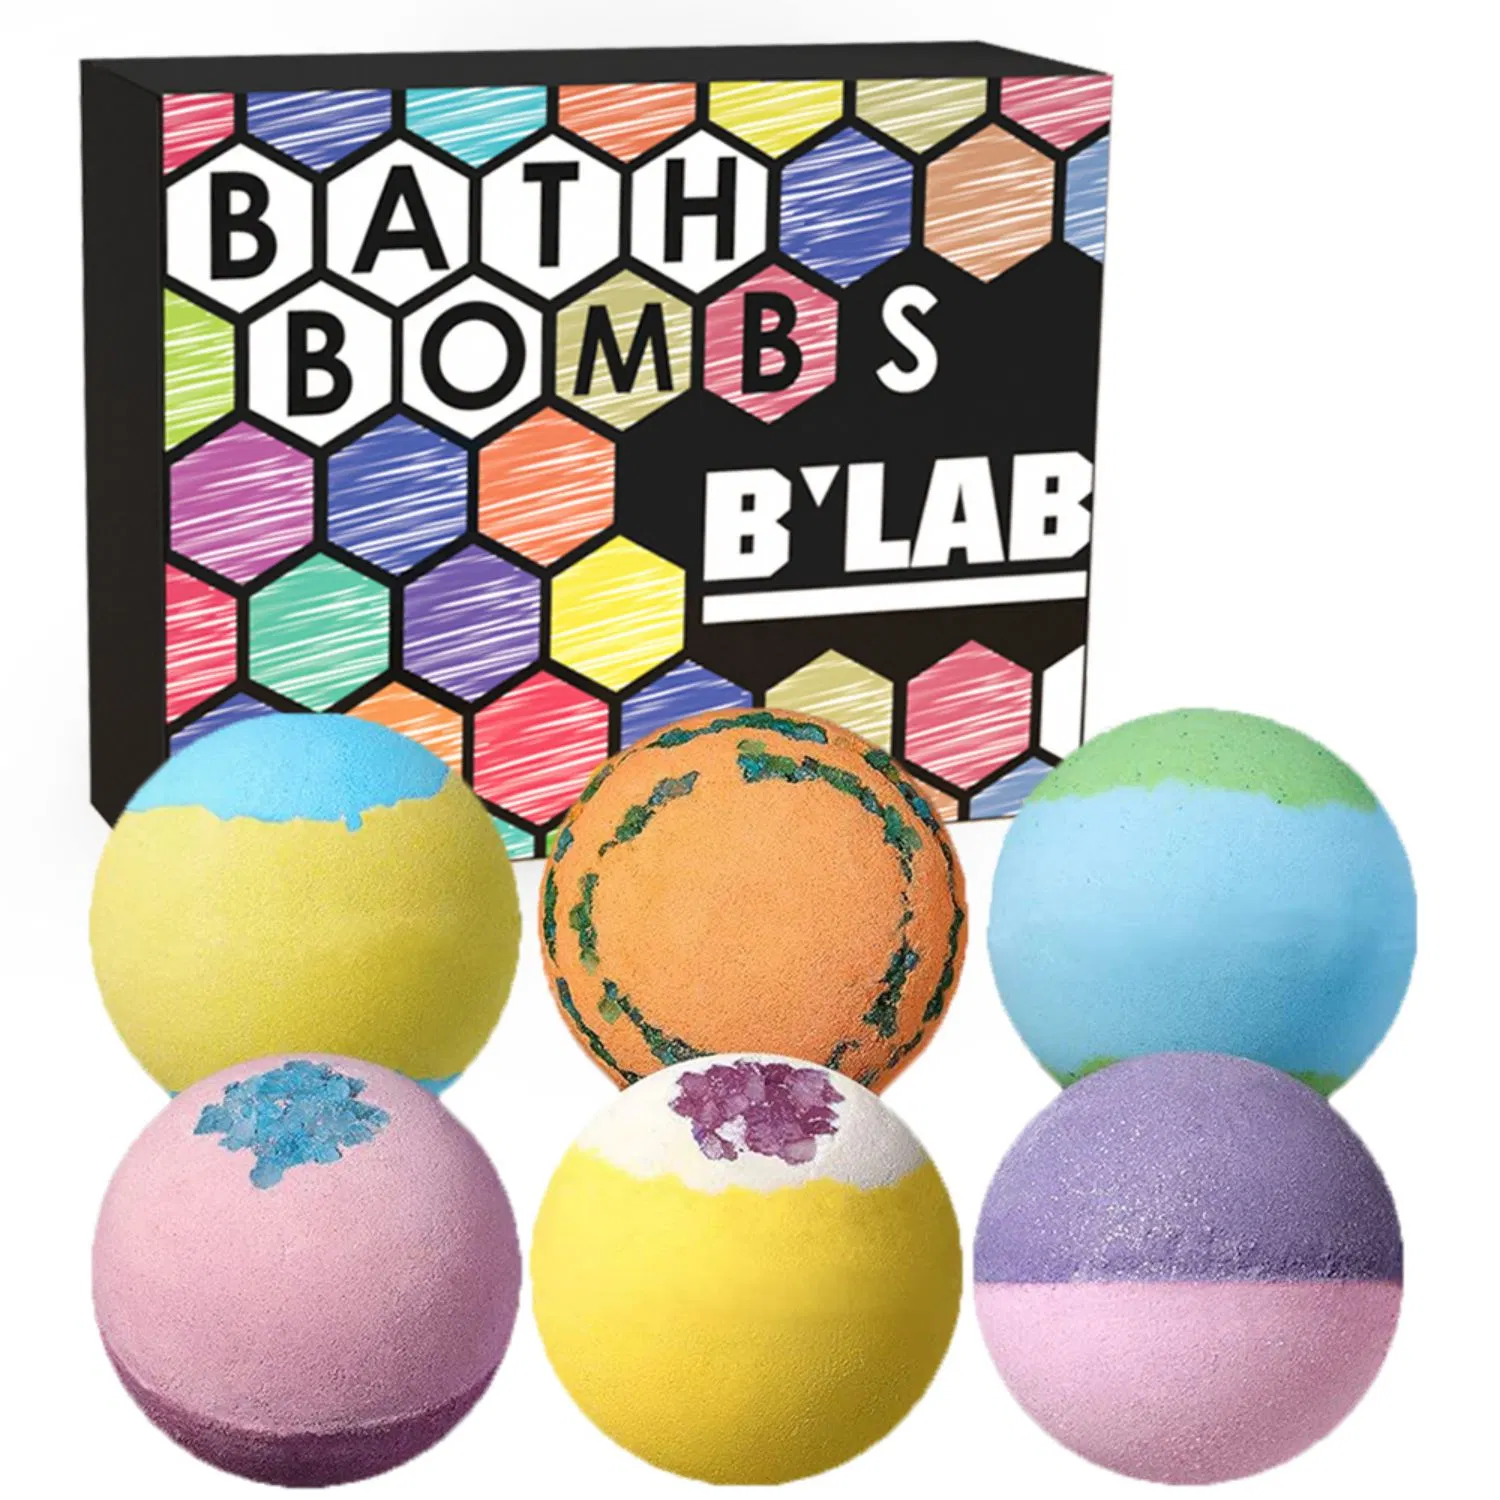 Private Label ванной бомб подарочный набор Ши и Коко сливочного масла сухой кожи увлажняет купол СПА